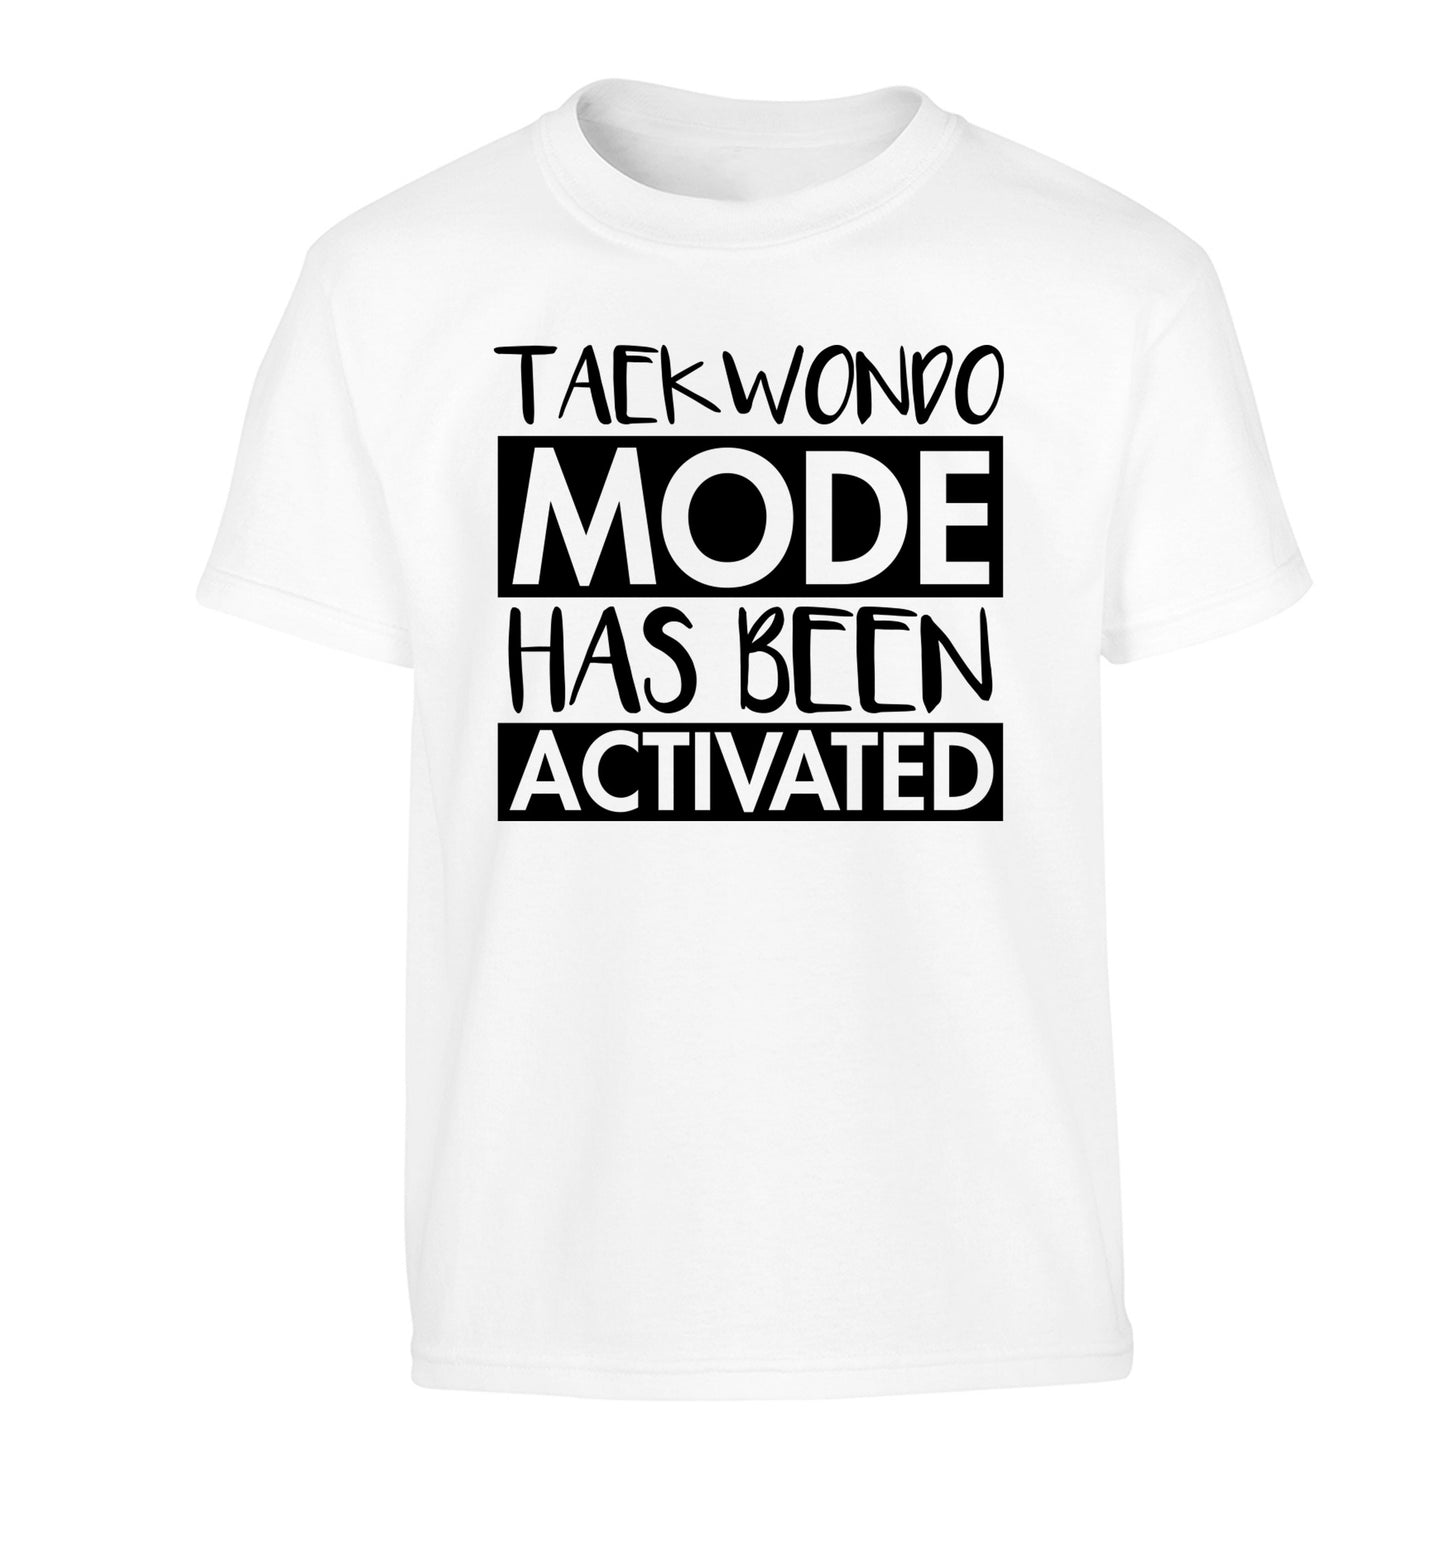 Taekwondo mode activated Children's white Tshirt 12-14 Years